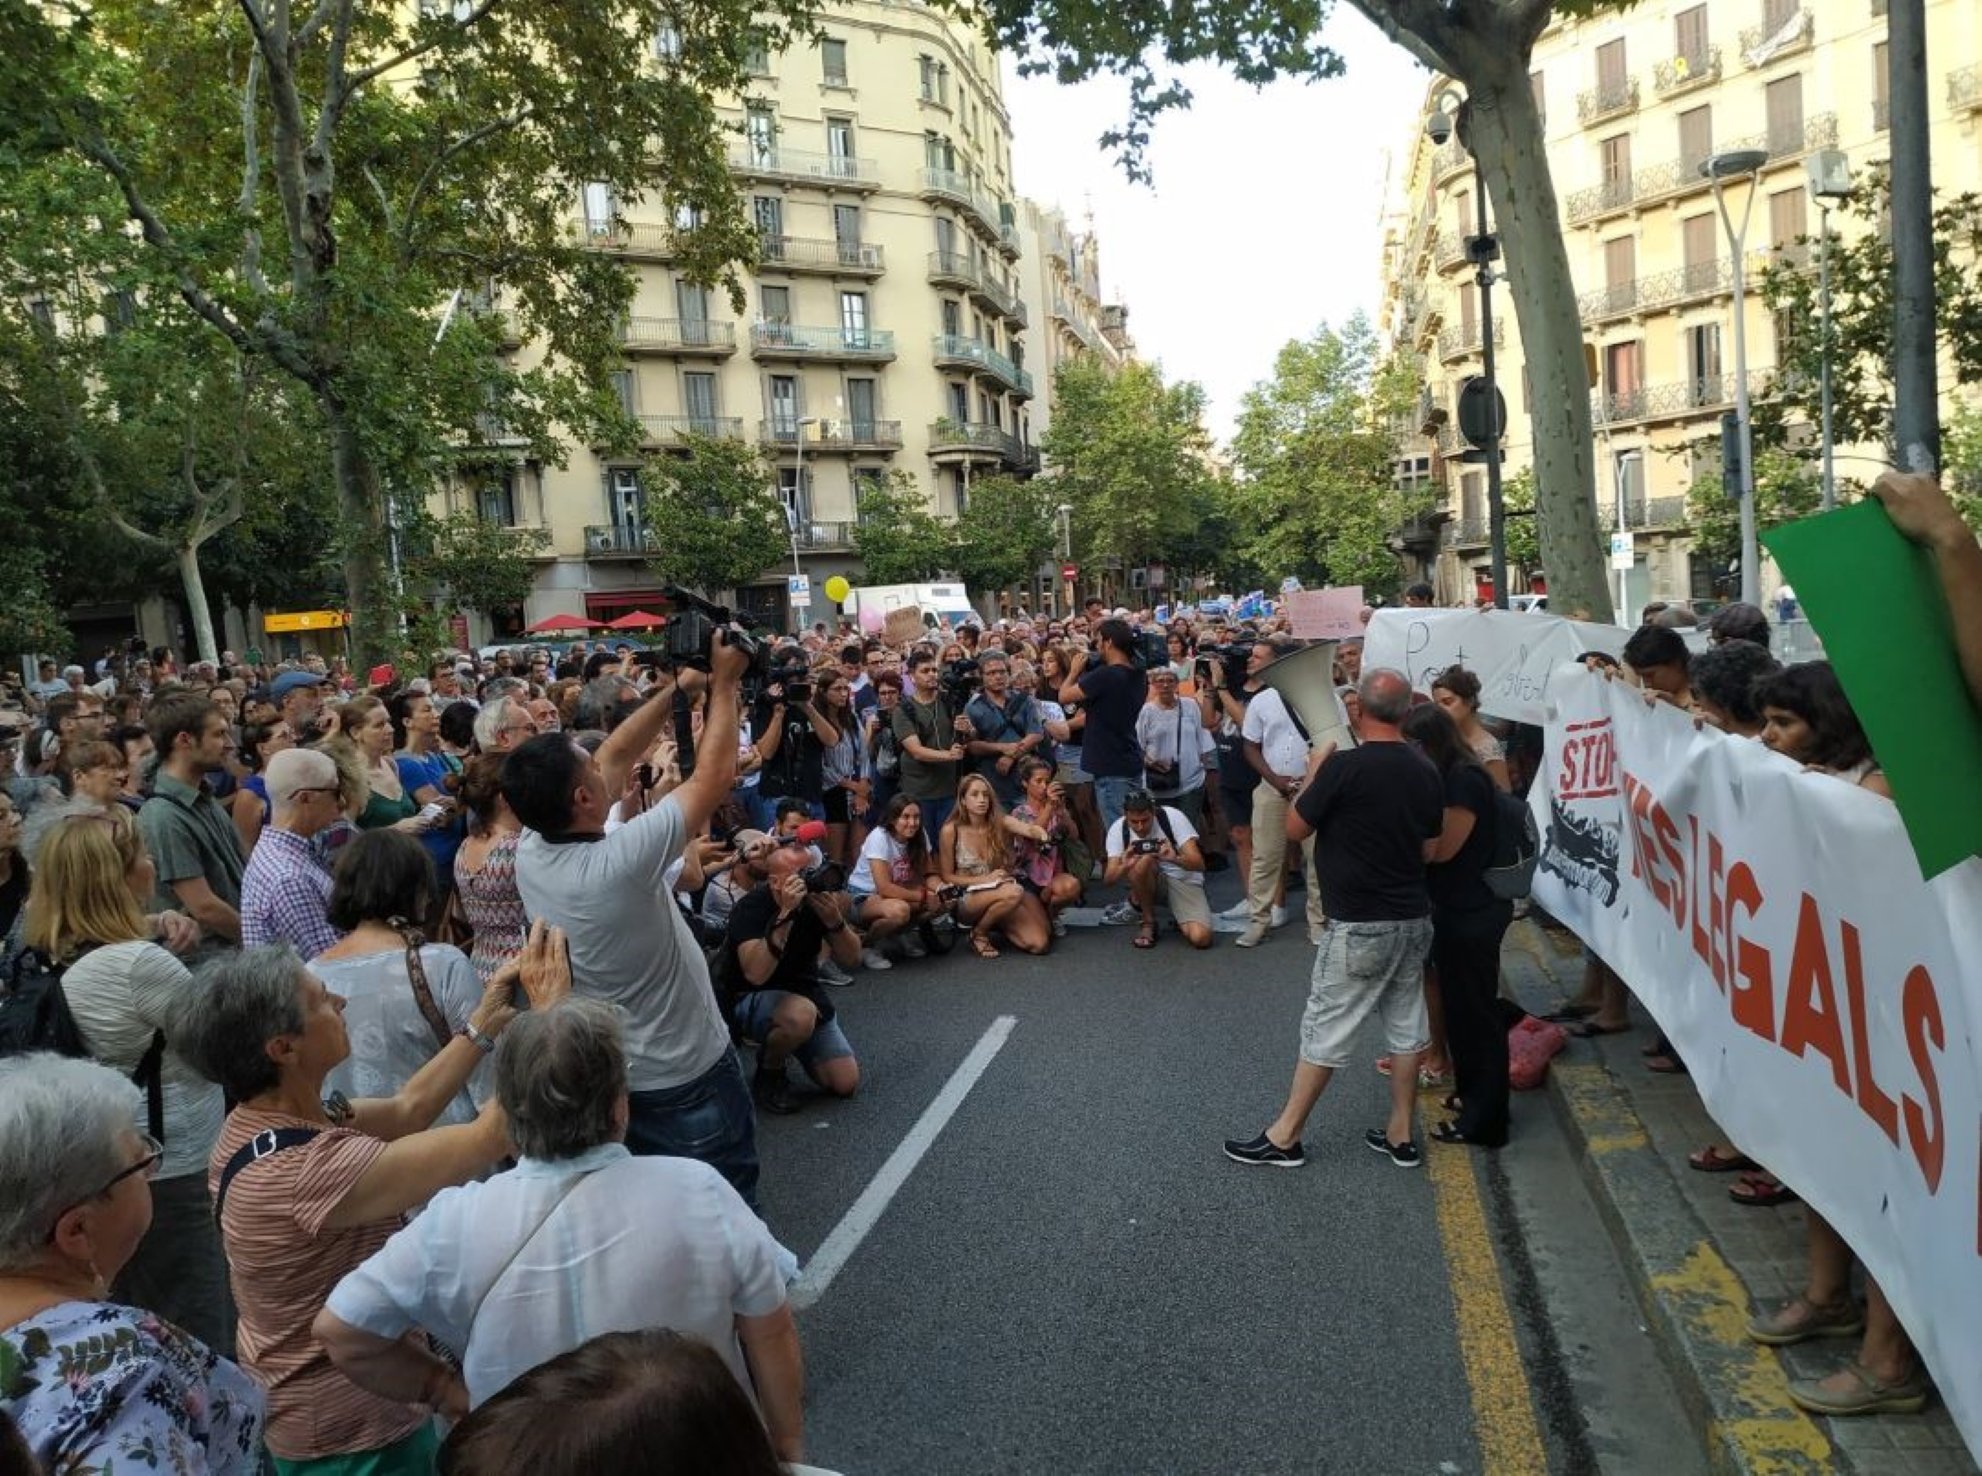 Presión sobre Pedro Sánchez en Barcelona para que acoja el Open Arms